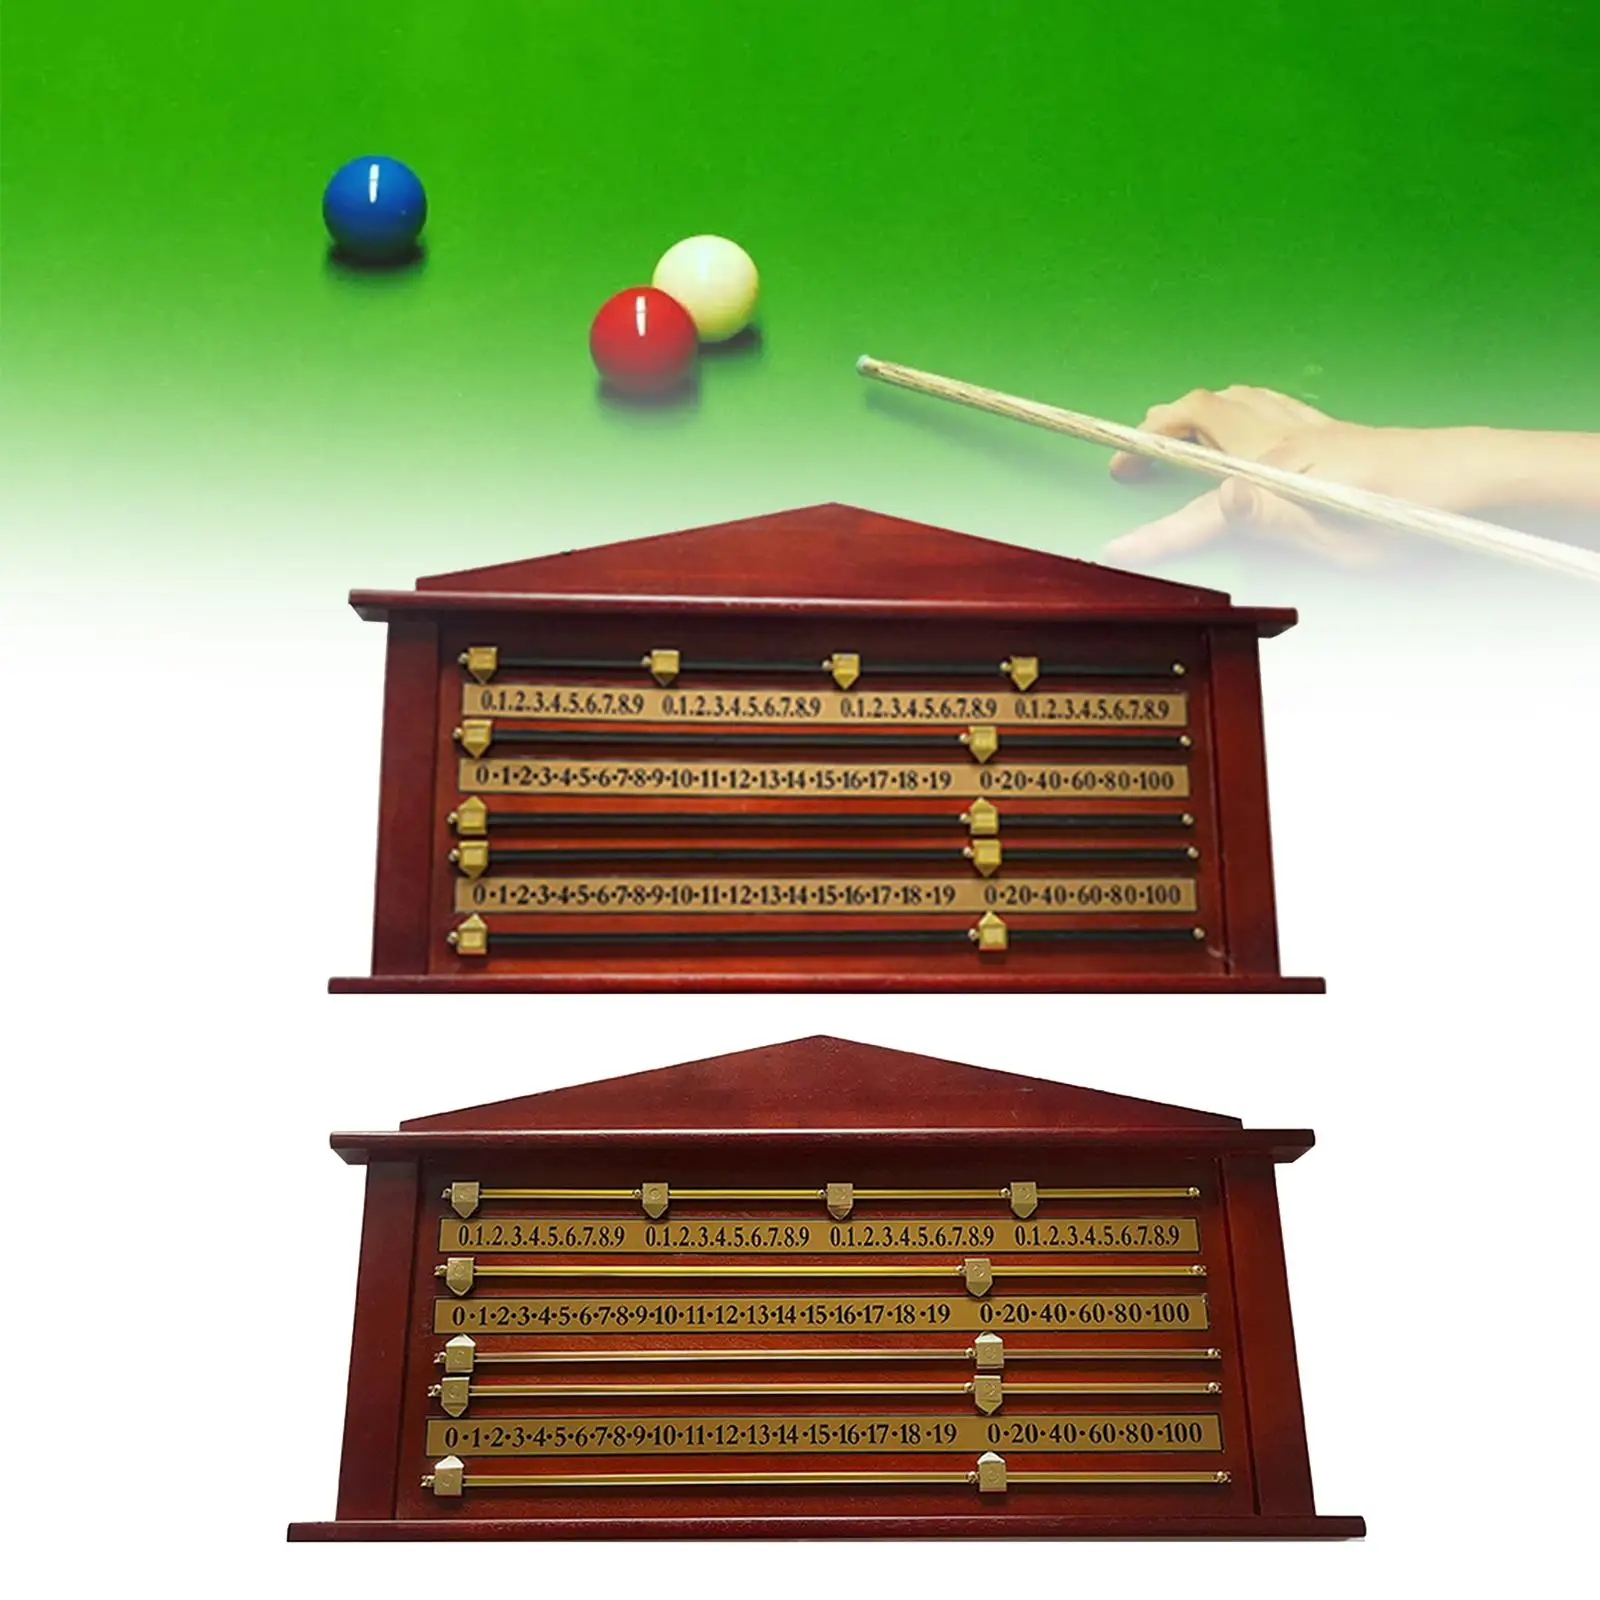 Snooker Billiard Score Board, Shuffleboard Scoreboard Scoring Club Accessories, Snooker Scoreboard Billiard Score Keeper